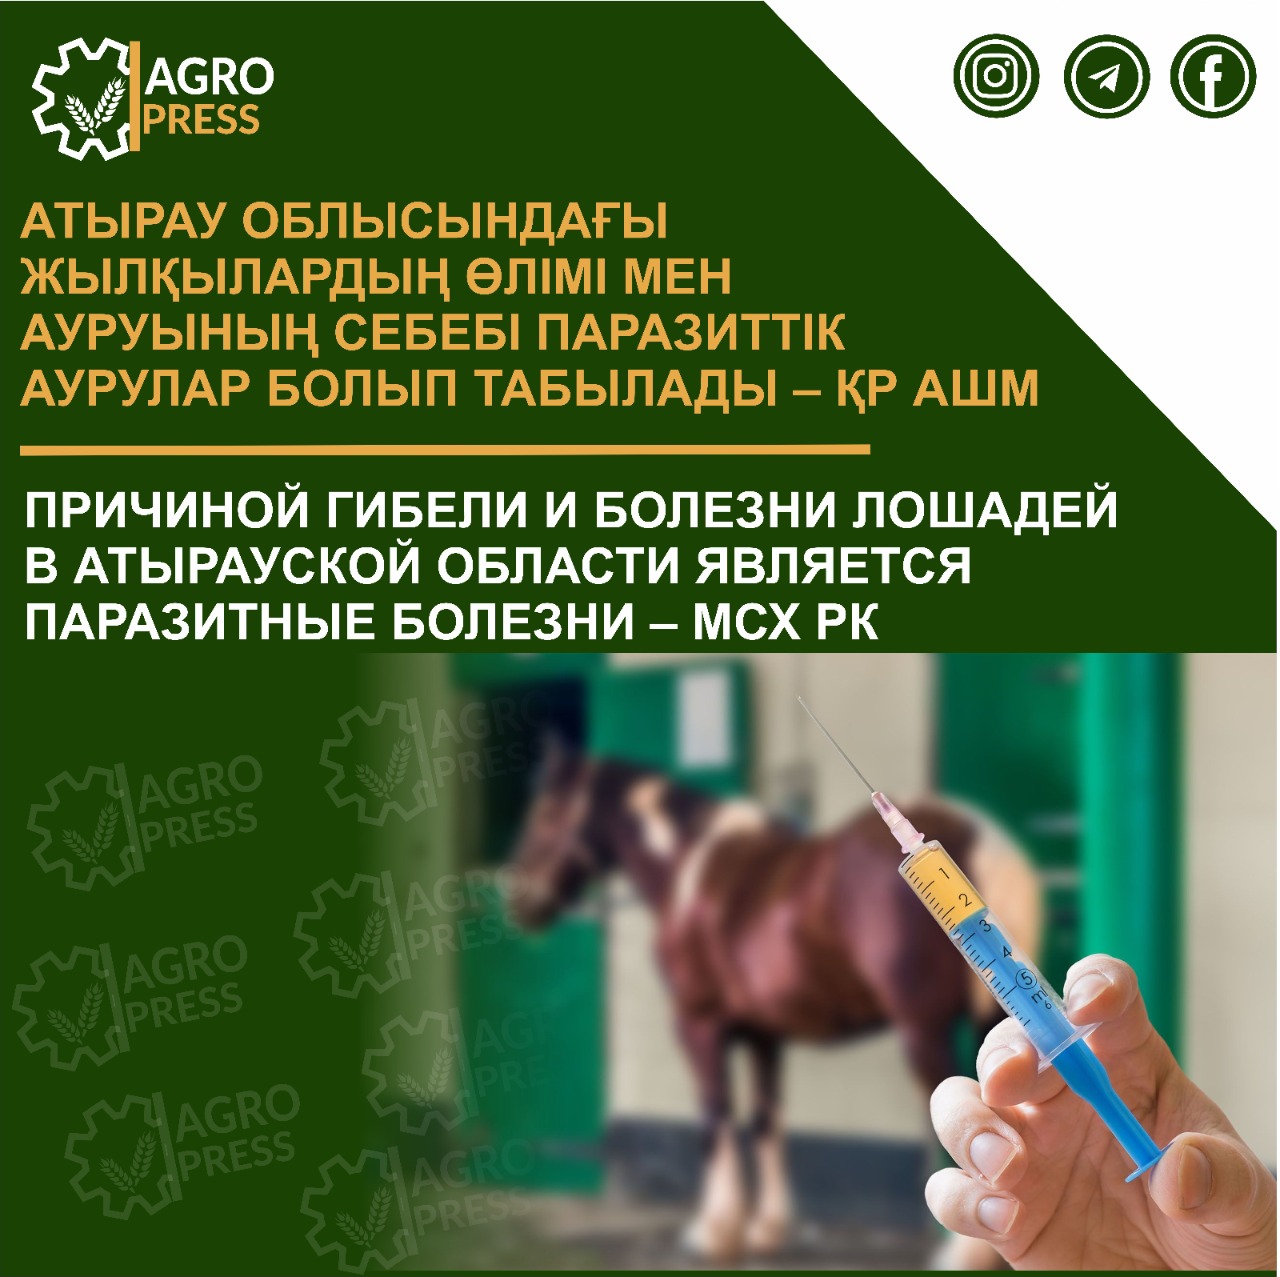 Причиной гибели и болезни лошадей в Атырауской области является паразитные болезни – МСХ РК